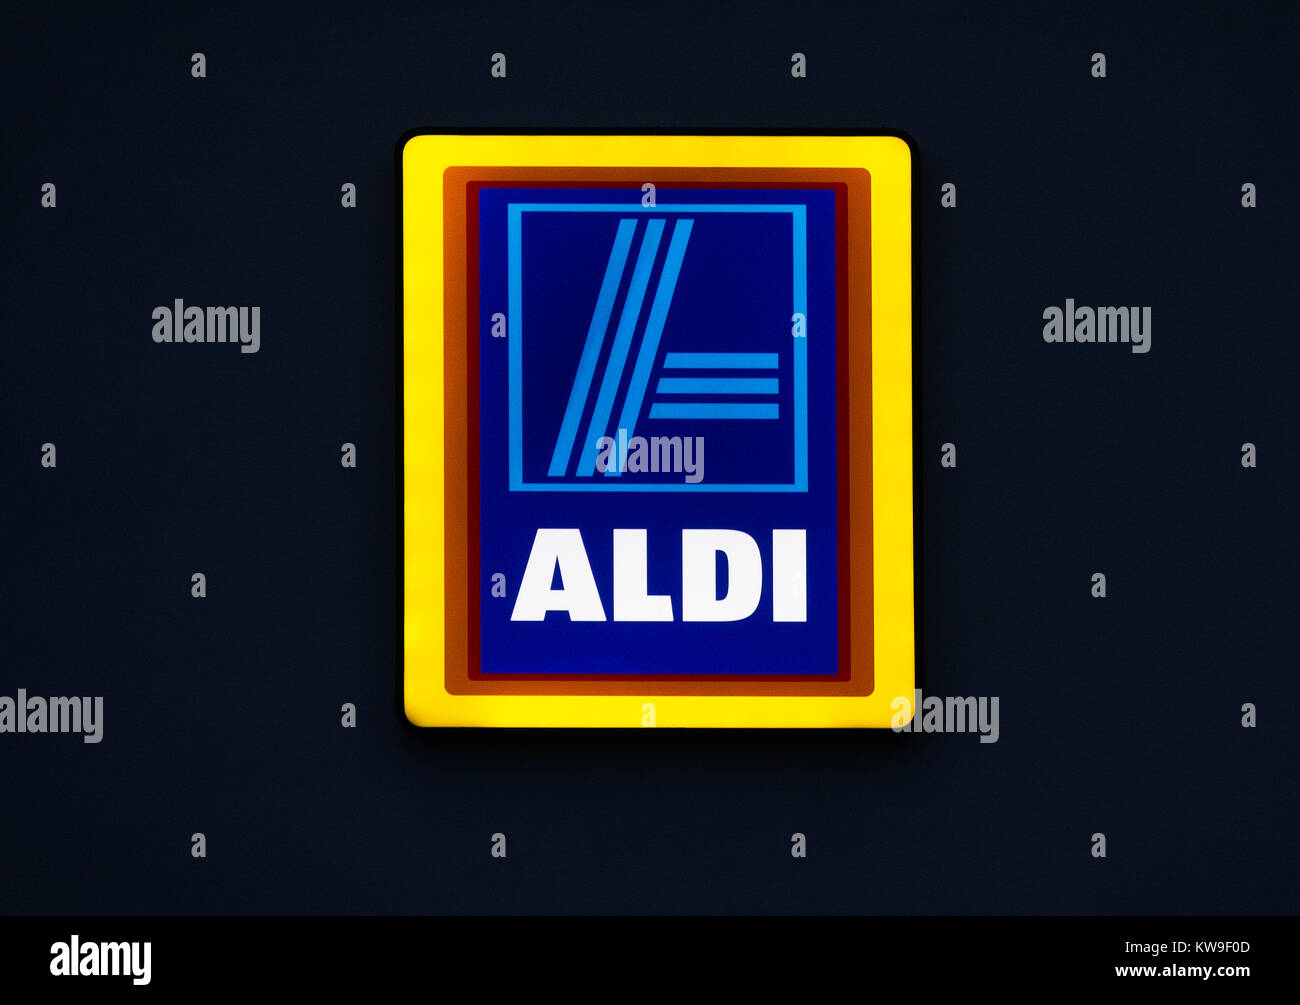 Aldi Store anmelden Logo Neon Licht Stockfoto